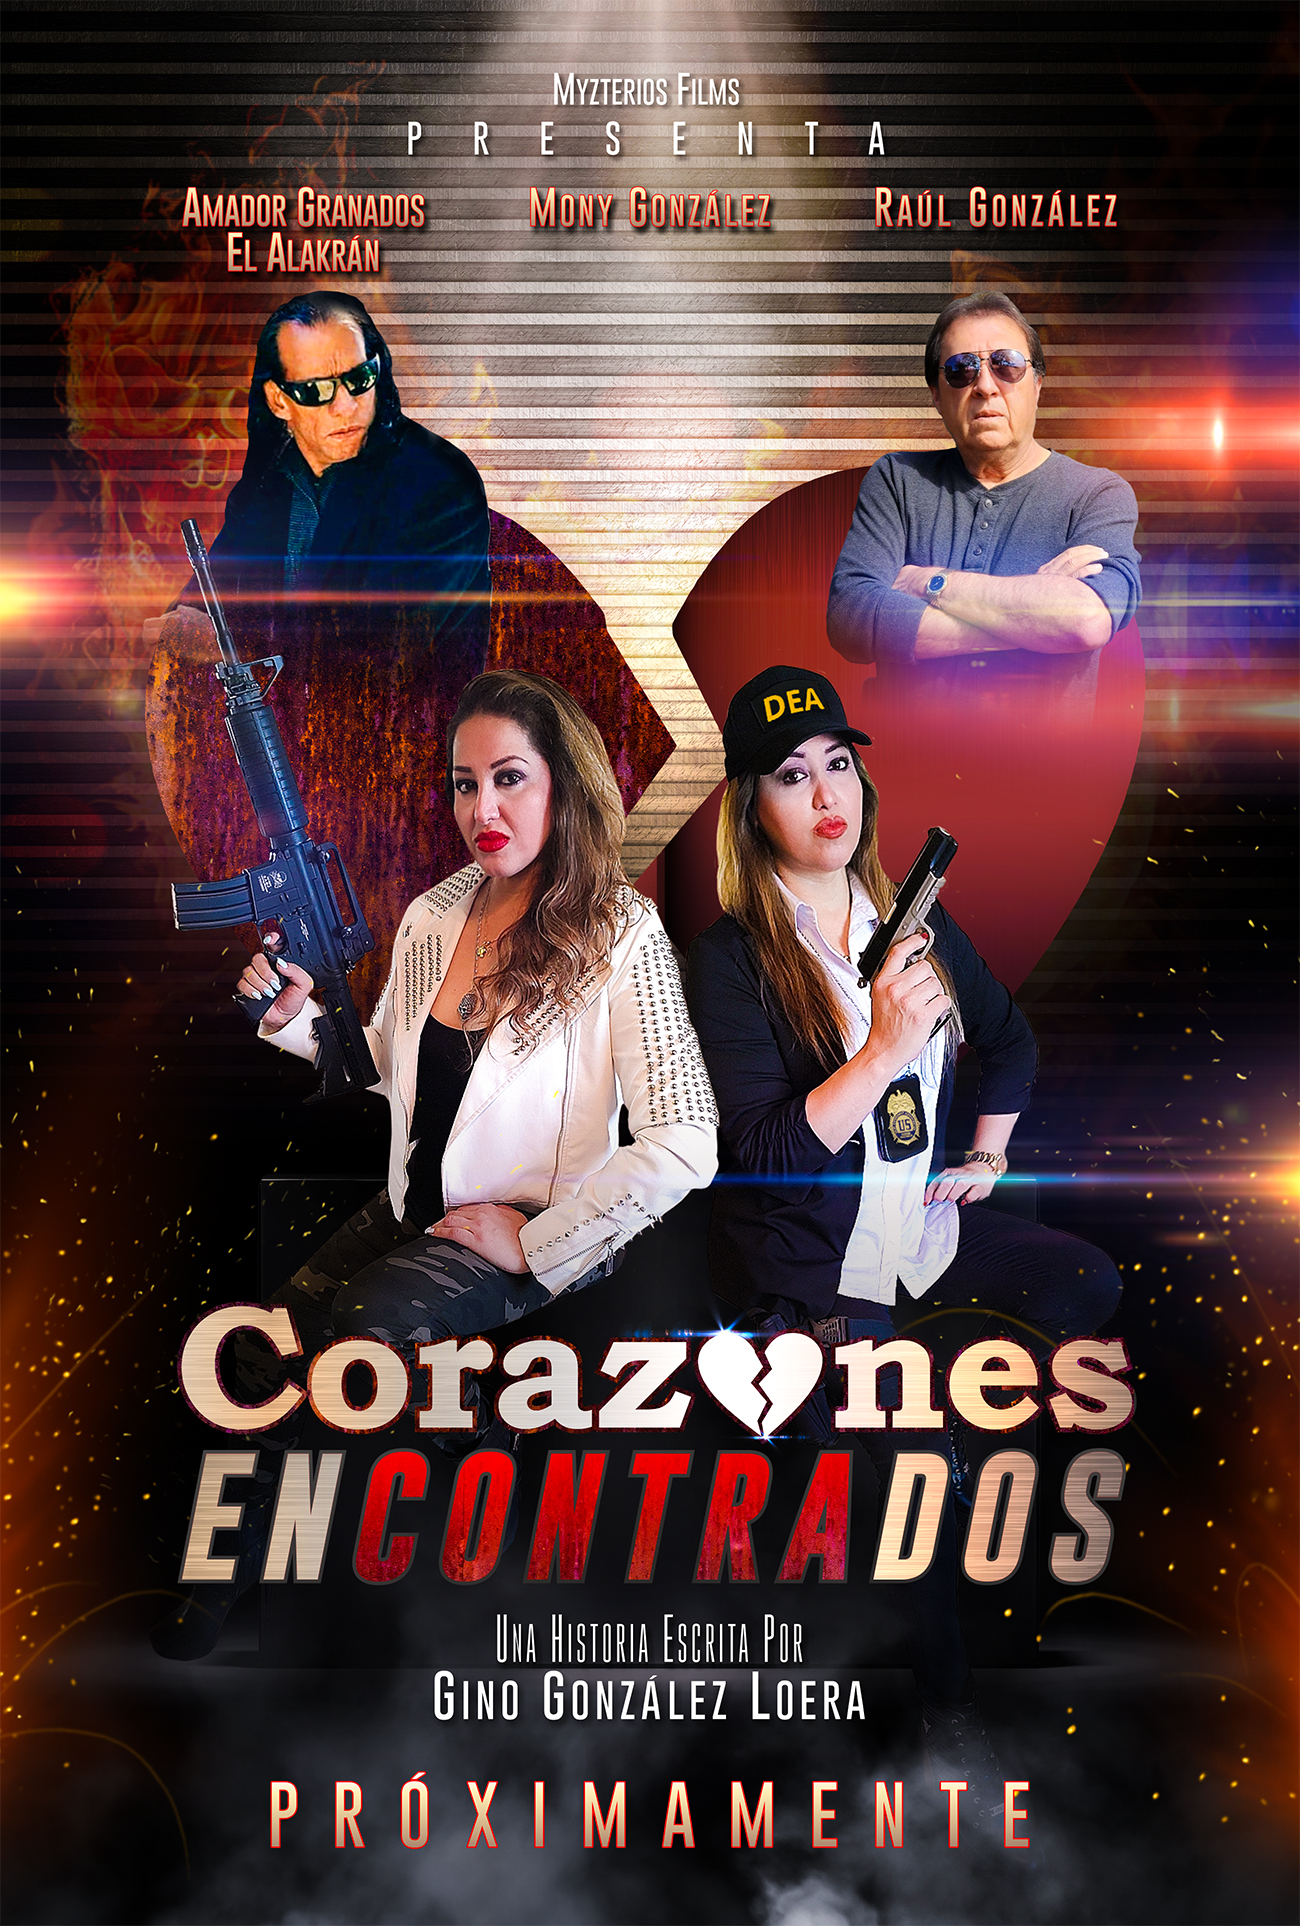 Fotográfia y Diseño de posters para la película Corazones Econtrados de Myzterios Films. Arte por Cinefilmico Film Studio.